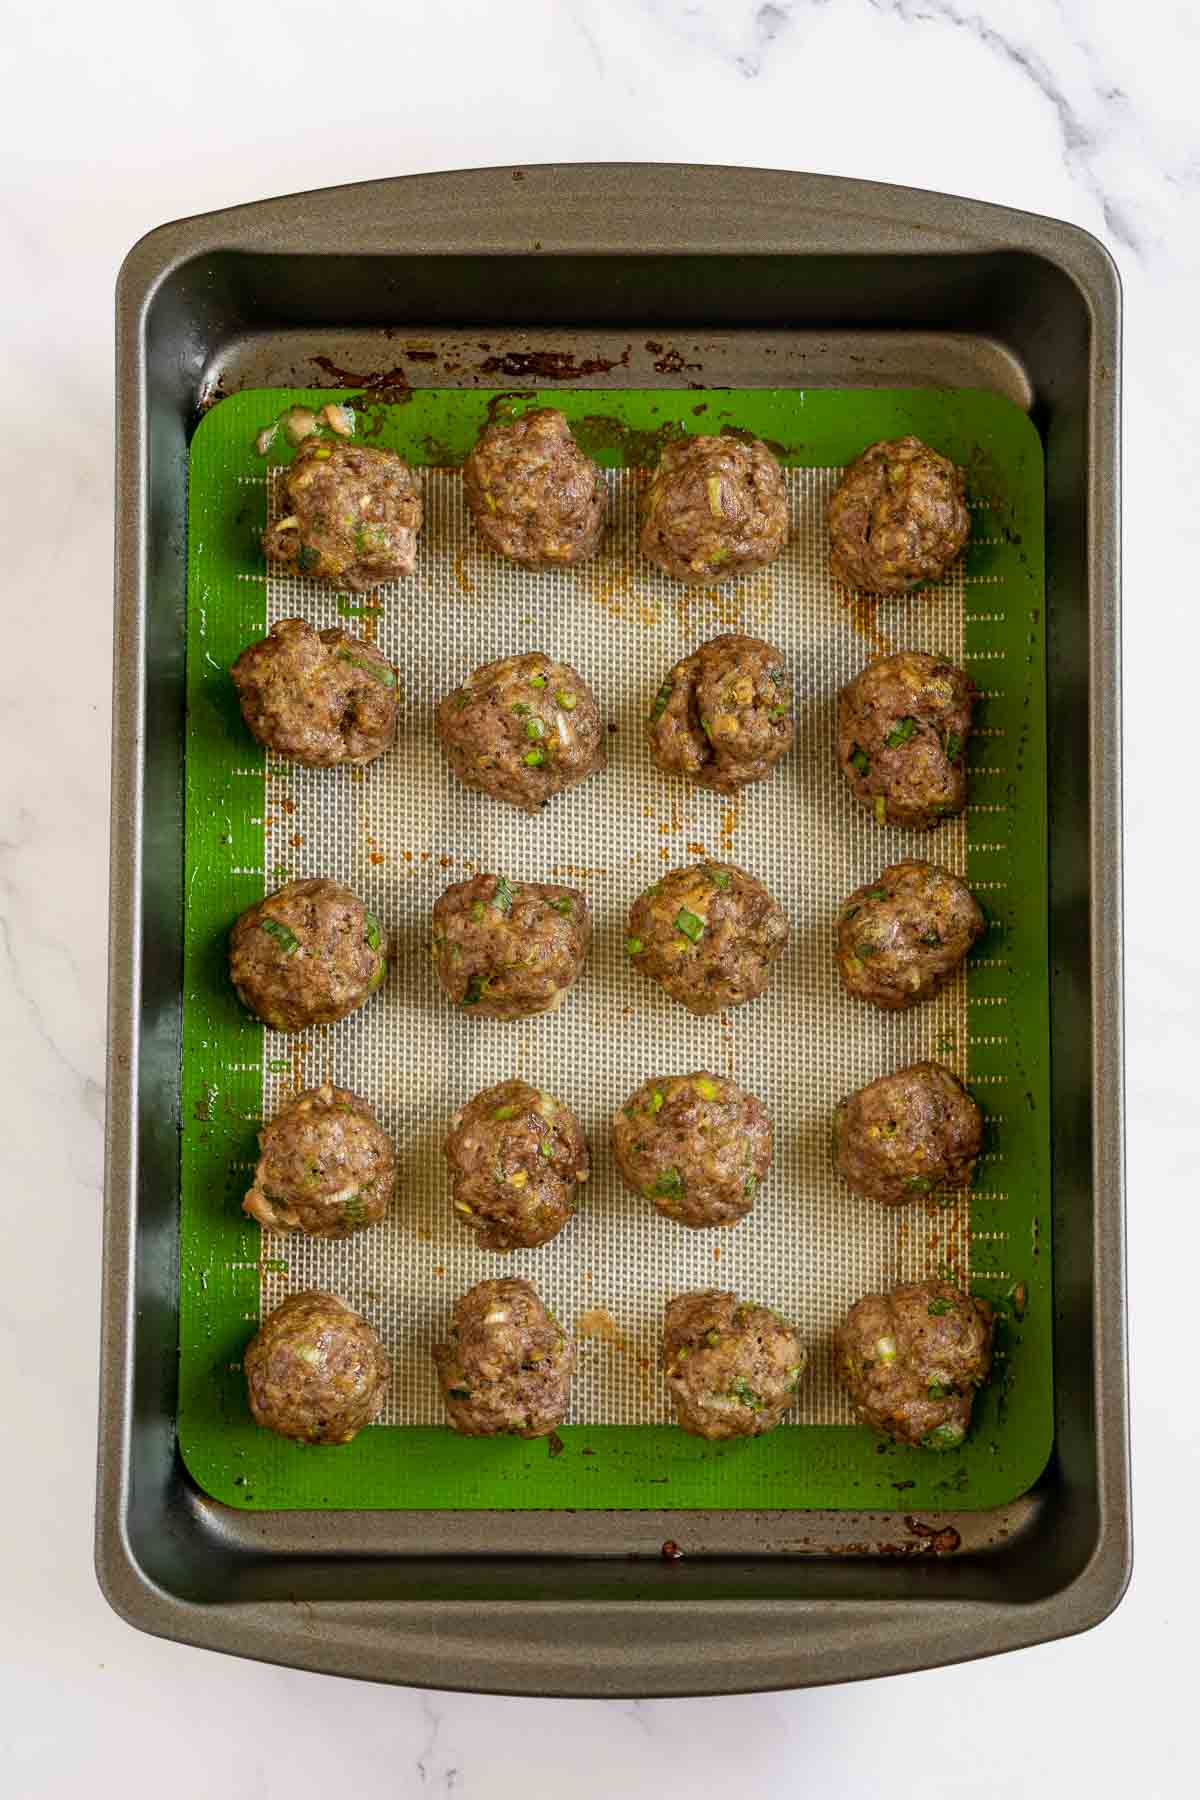 Baked bison meatballs